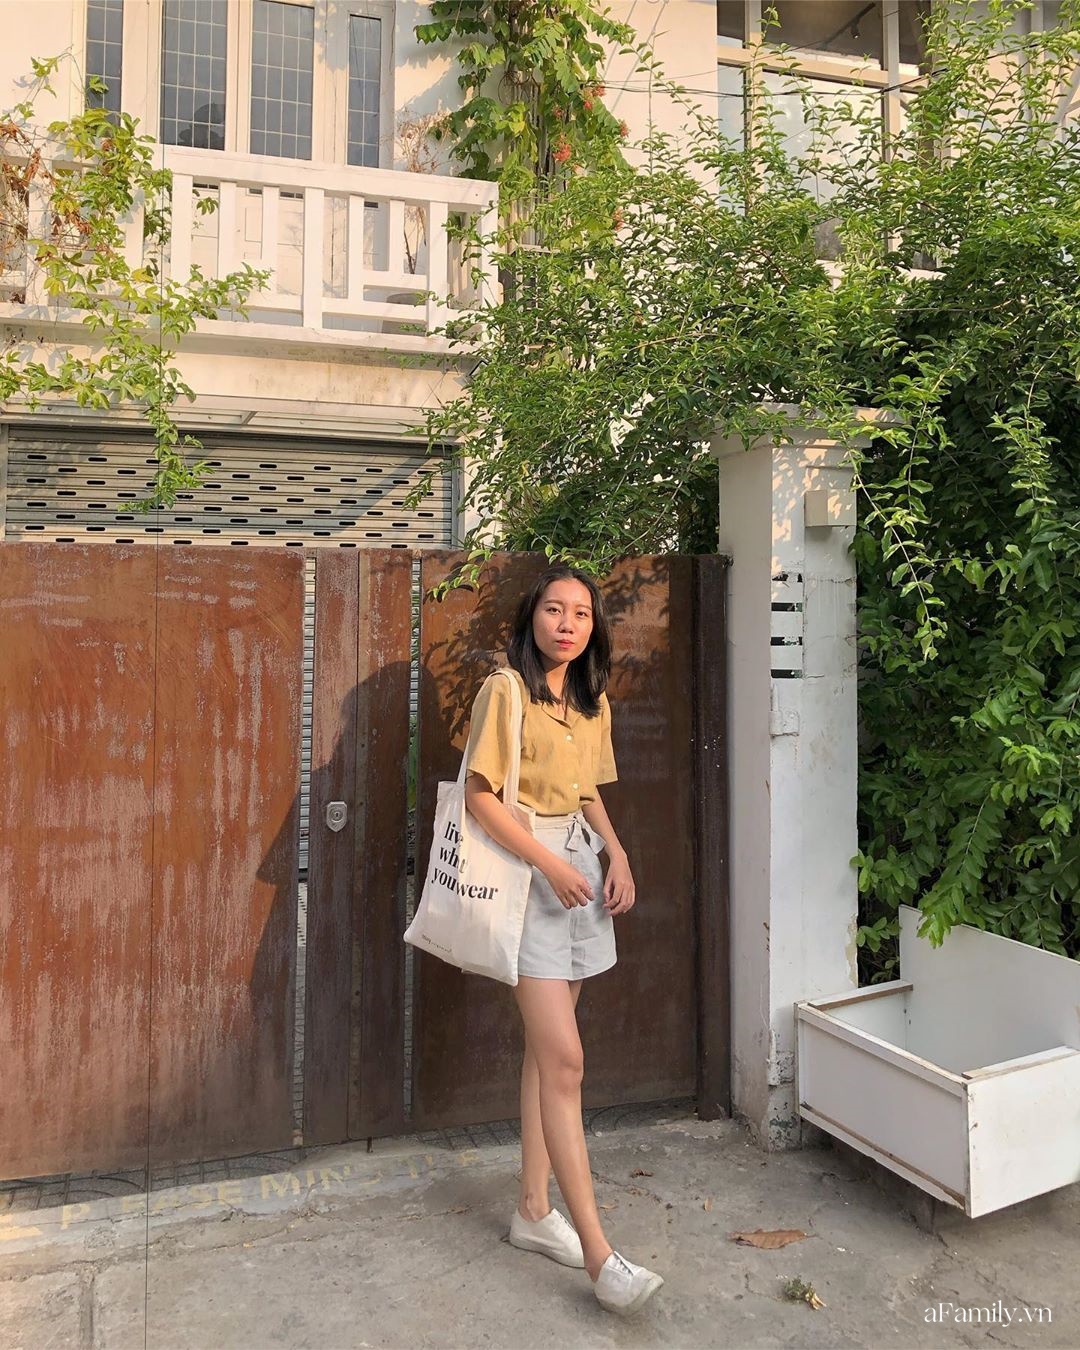 Bạn trẻ Sài Gòn hướng dẫn cách mua hàng thùng mặc đẹp như gái Hàn Quốc chỉ  50Kmón